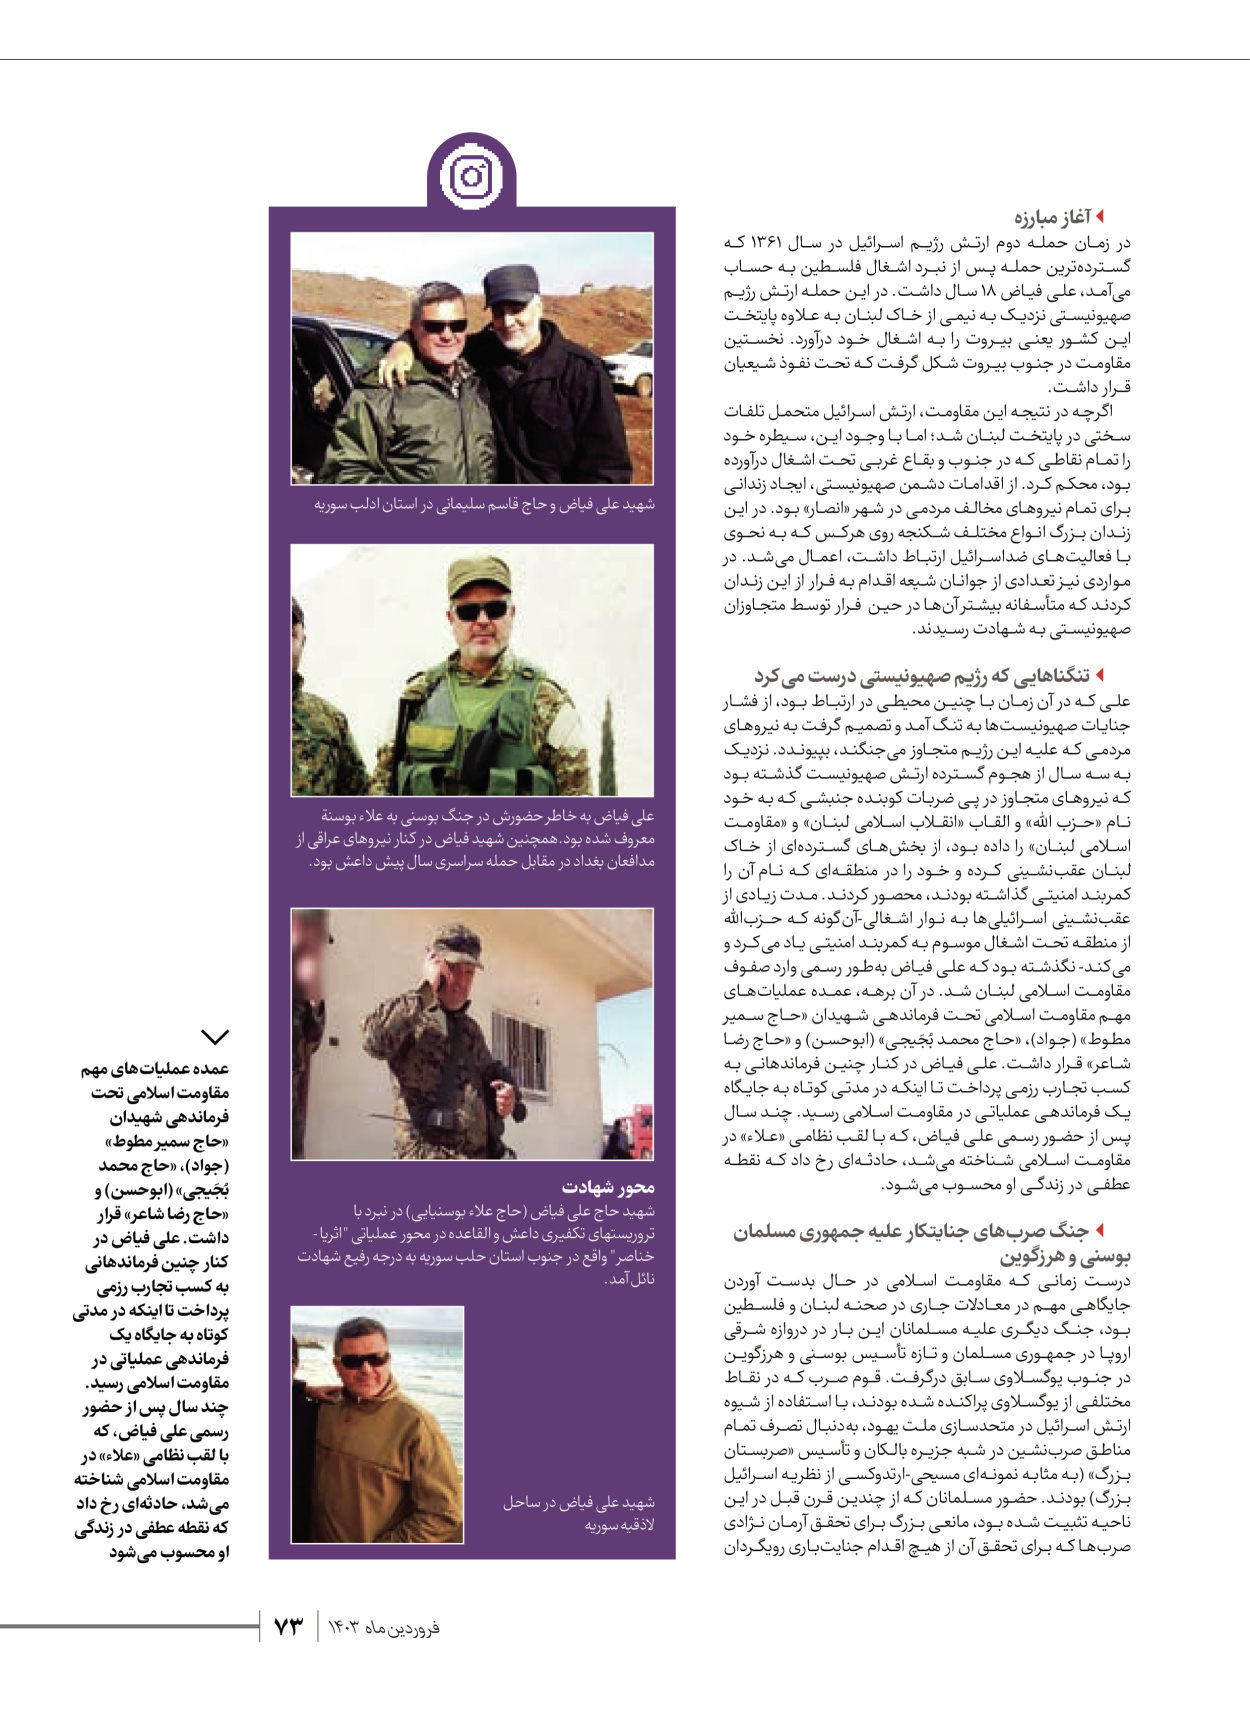 روزنامه ایران - ویژه نامه شهدای قدس ۶ - ۲۵ فروردین ۱۴۰۳ - صفحه ۷۳